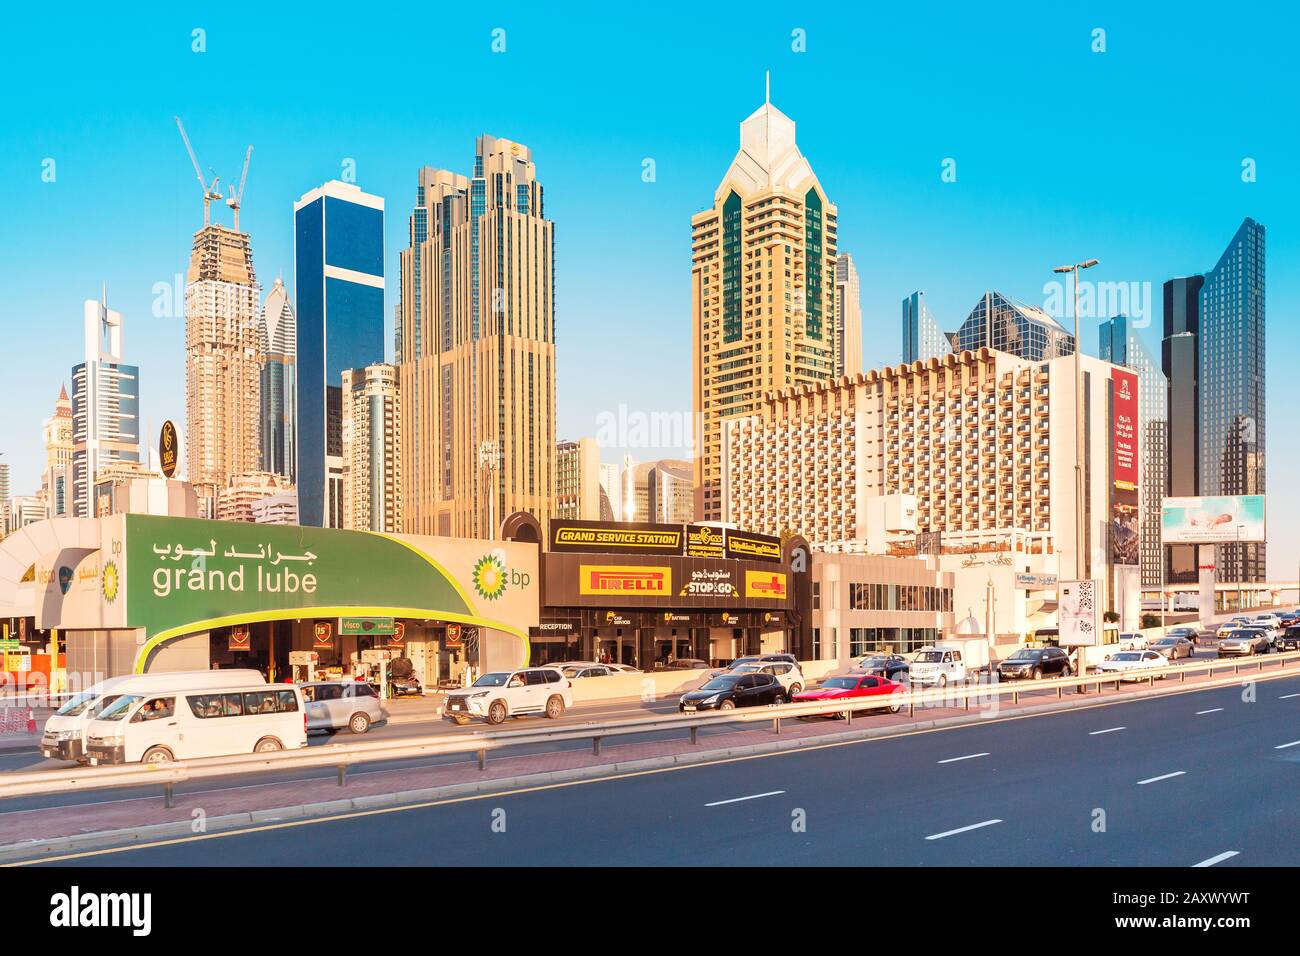 26 novembre 2019, Emirati Arabi Uniti, Dubai: Paesaggio urbano con grattacieli e servizi di auto sulla strada Foto Stock